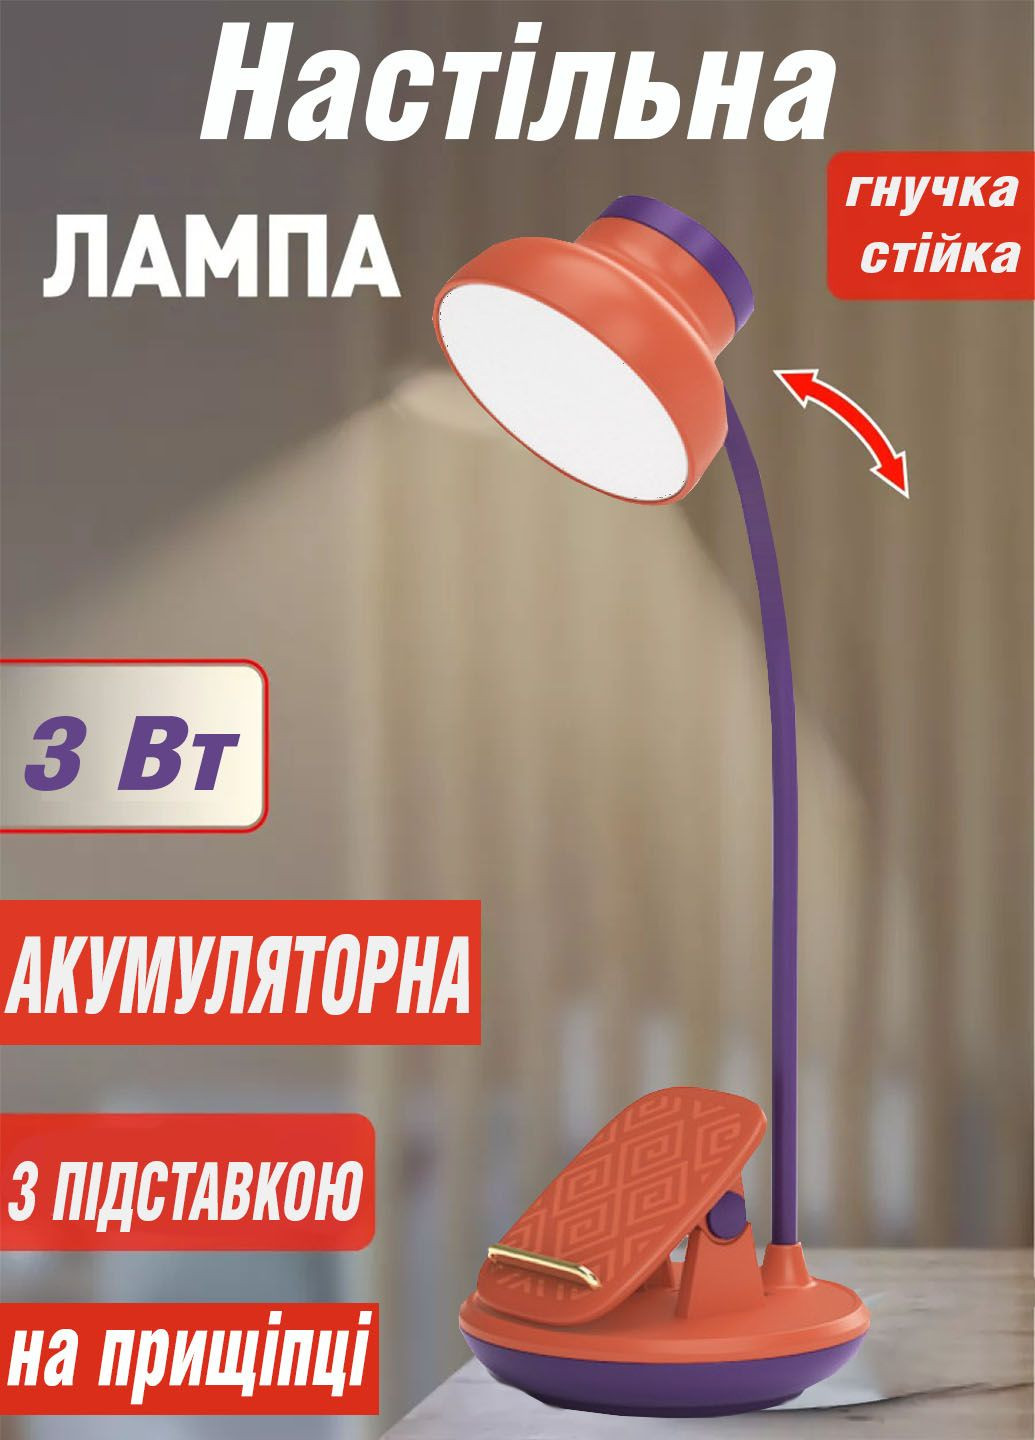 Настольная аккумуляторная лампа GL-565 на прищепке с подставкой для телефона Sokany (290187087)